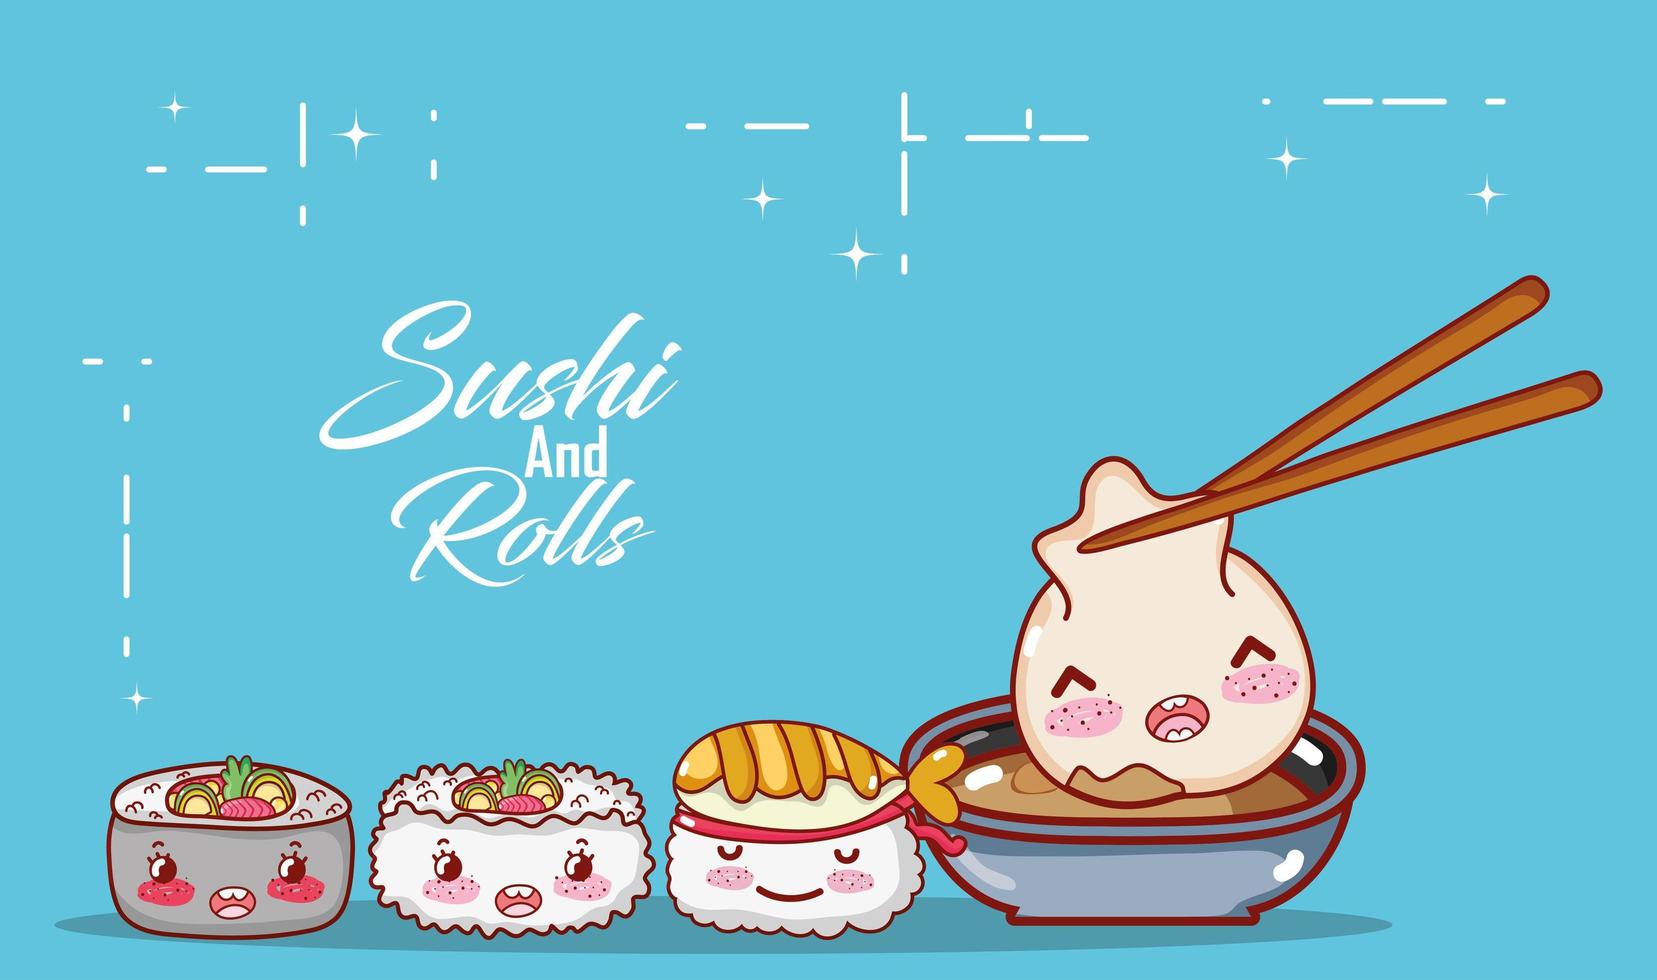 bolinho kawaii com molho shushi arroz sopa comida japonesa cartoon, sushi e pãezinhos vetor